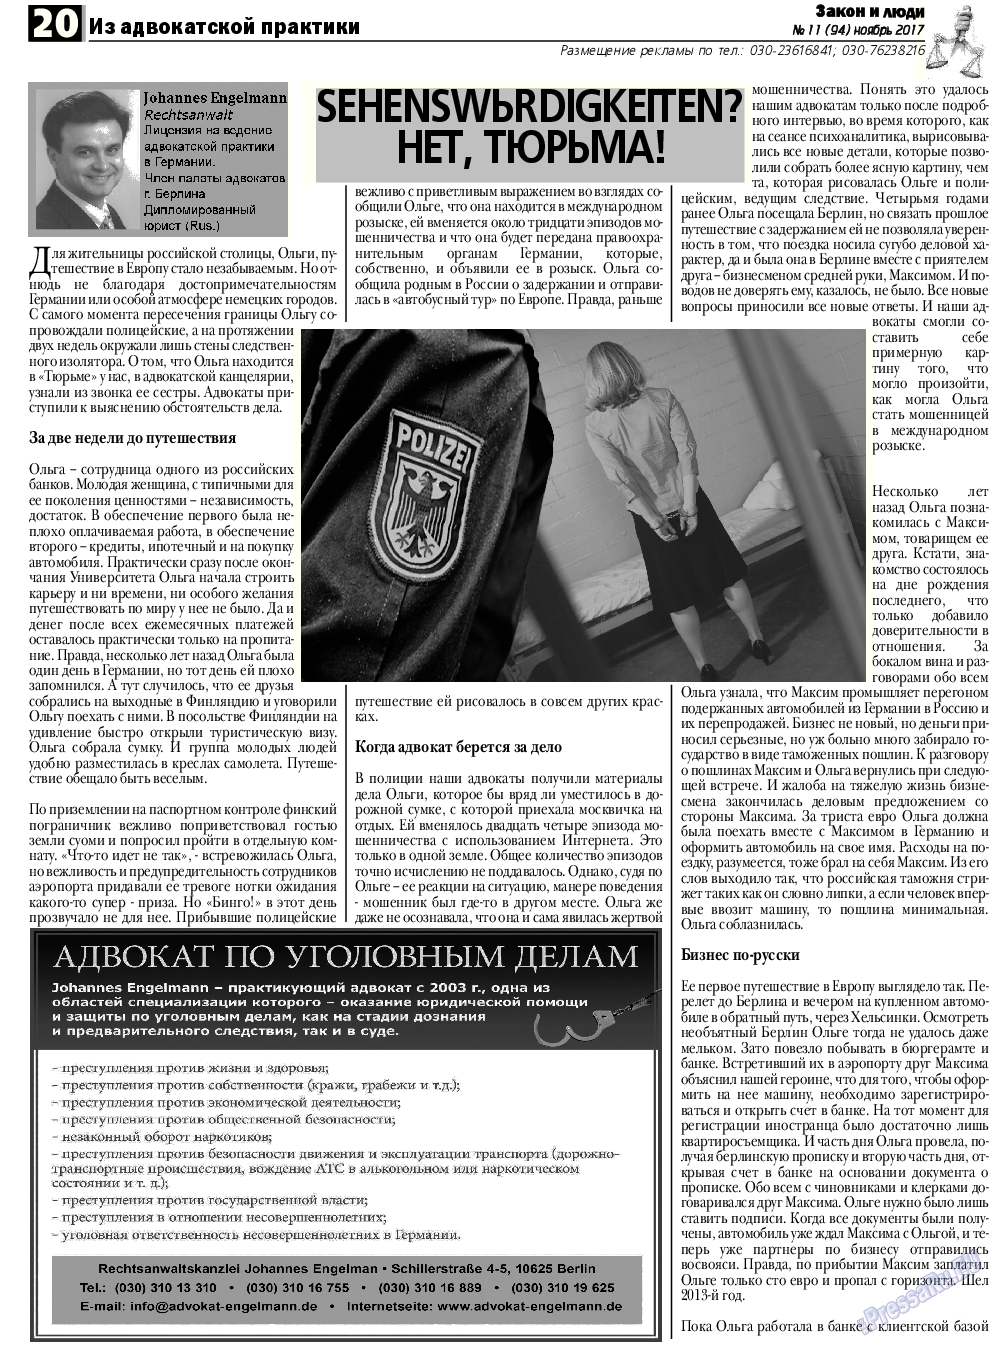 Закон и люди, газета. 2017 №11 стр.20